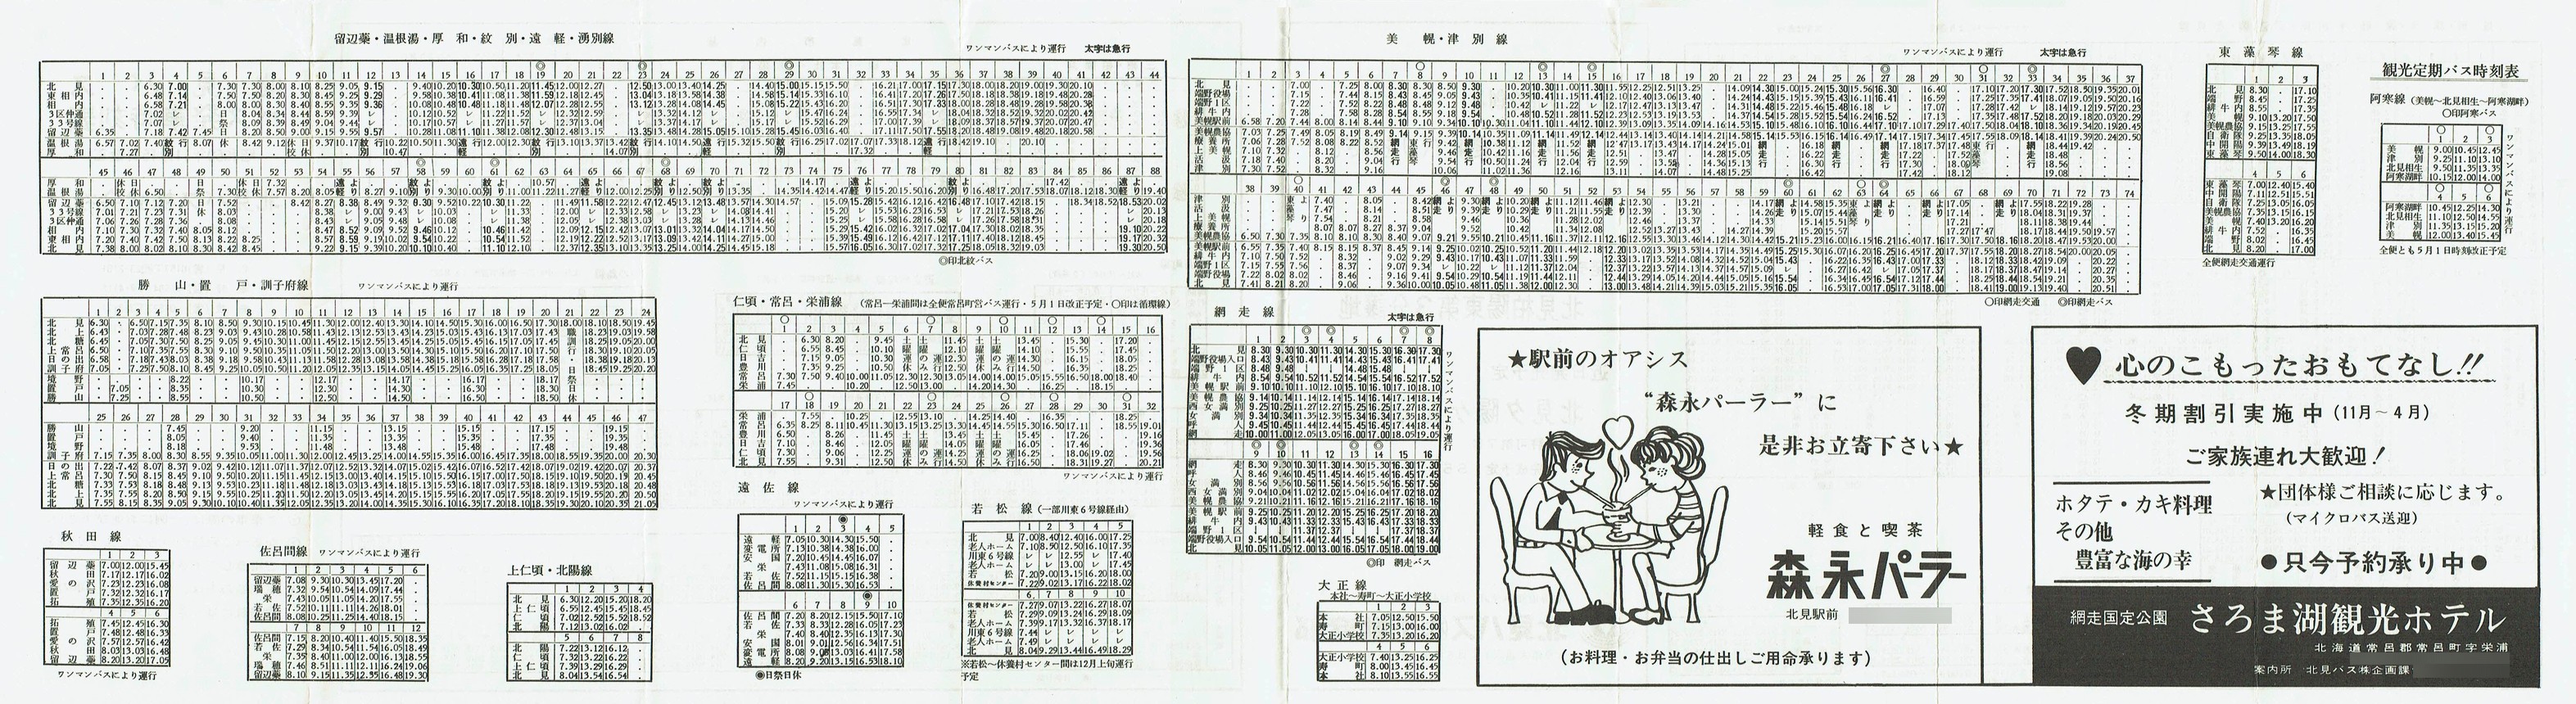 1975-11-15改正_北見バス_時刻表裏面